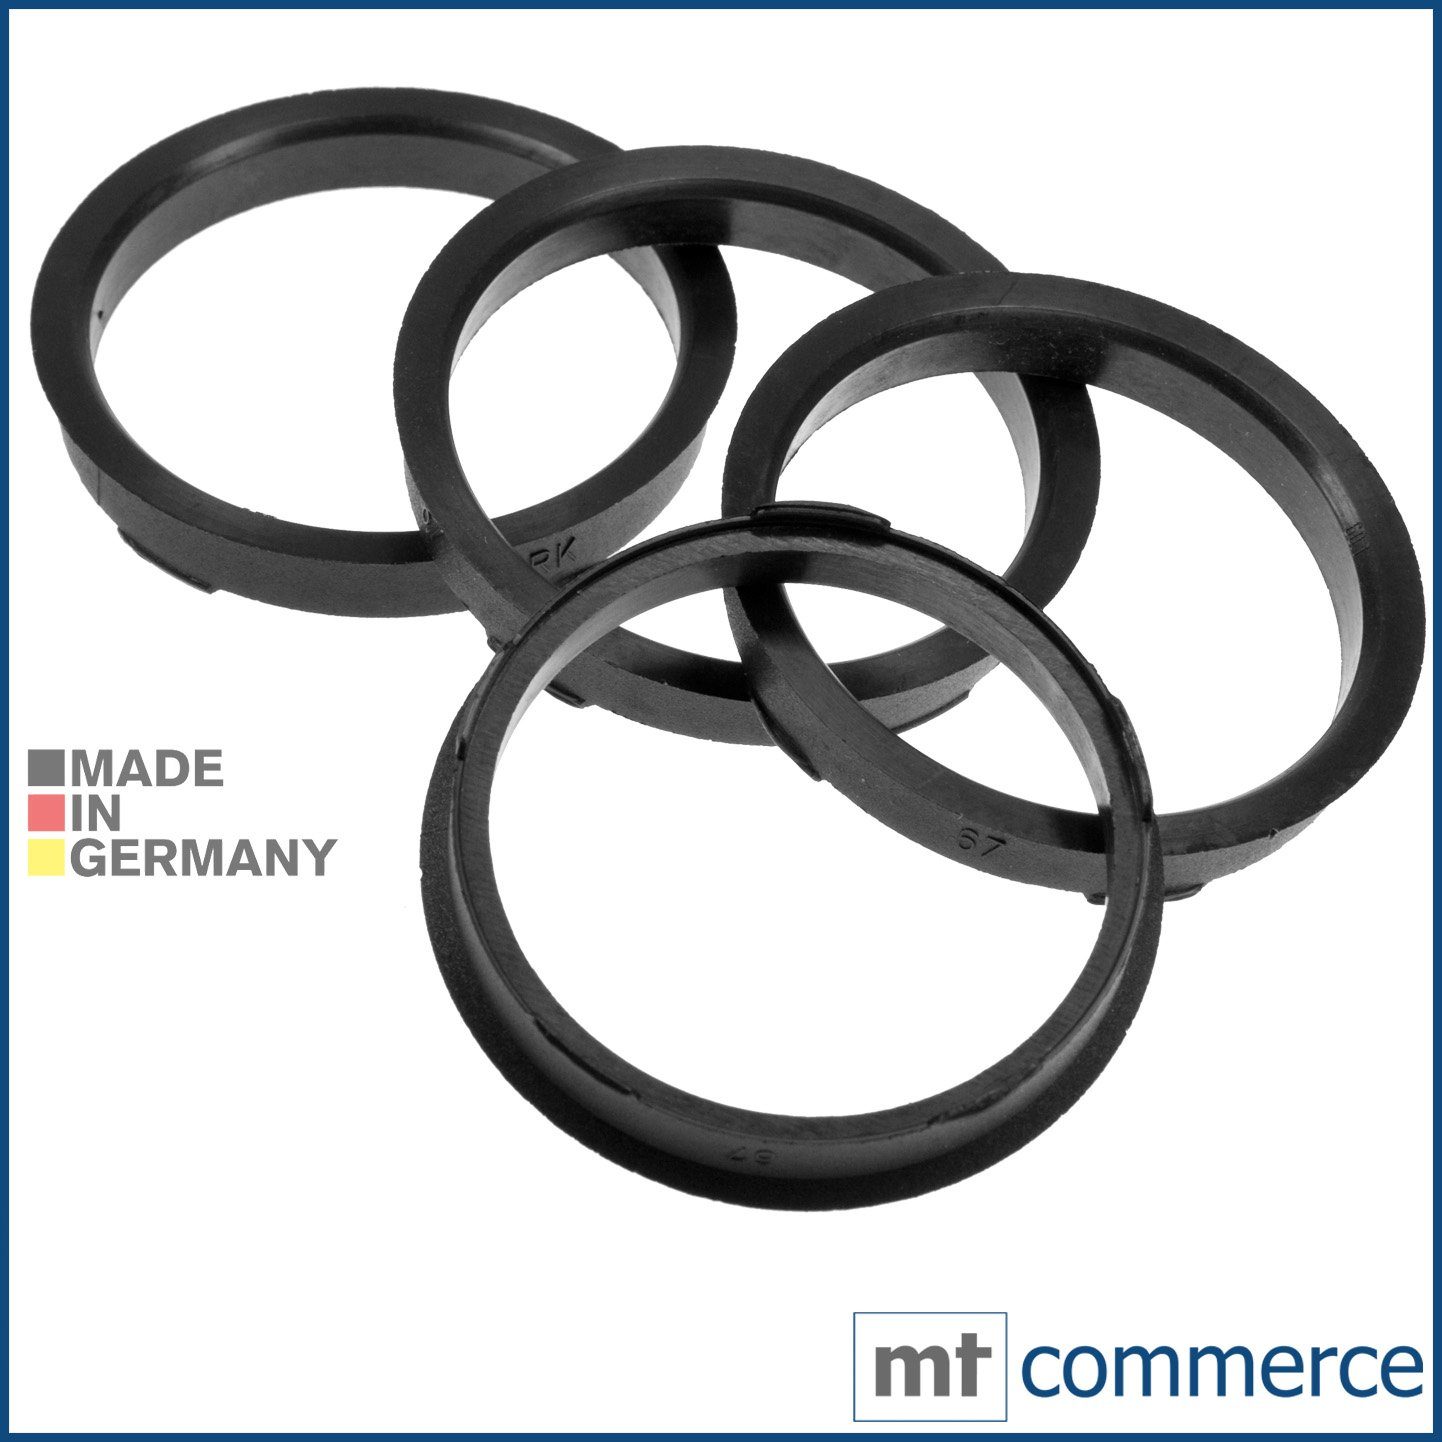 RKC Reifenstift 4X Zentrierringe schwarz Felgen Ringe Made in Germany, Maße: 67,0 x 60,1 mm